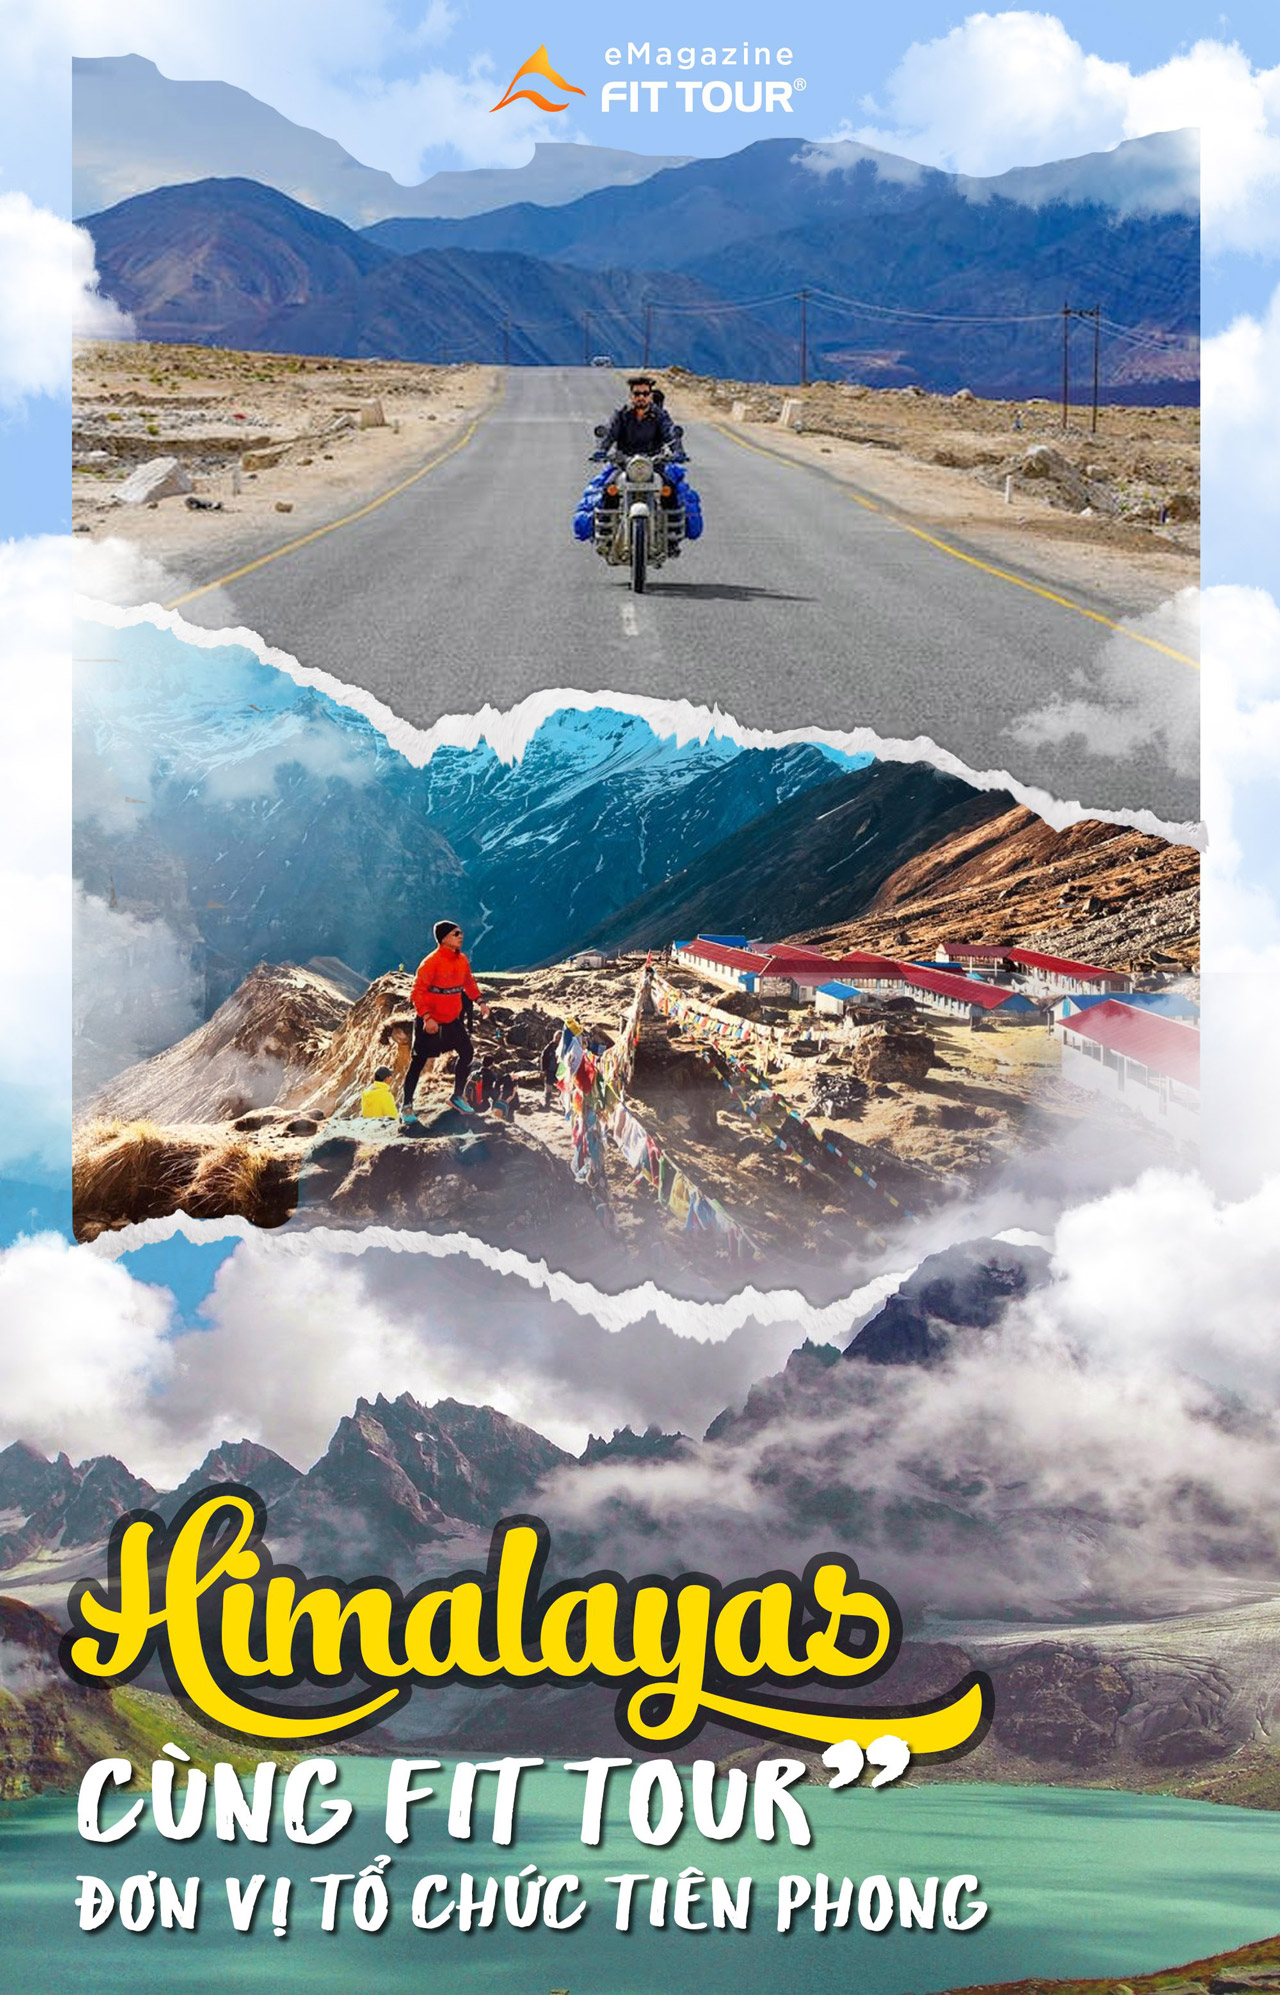 Đơn vị tổ chức tour Himalayas tiên phong - Fit tour